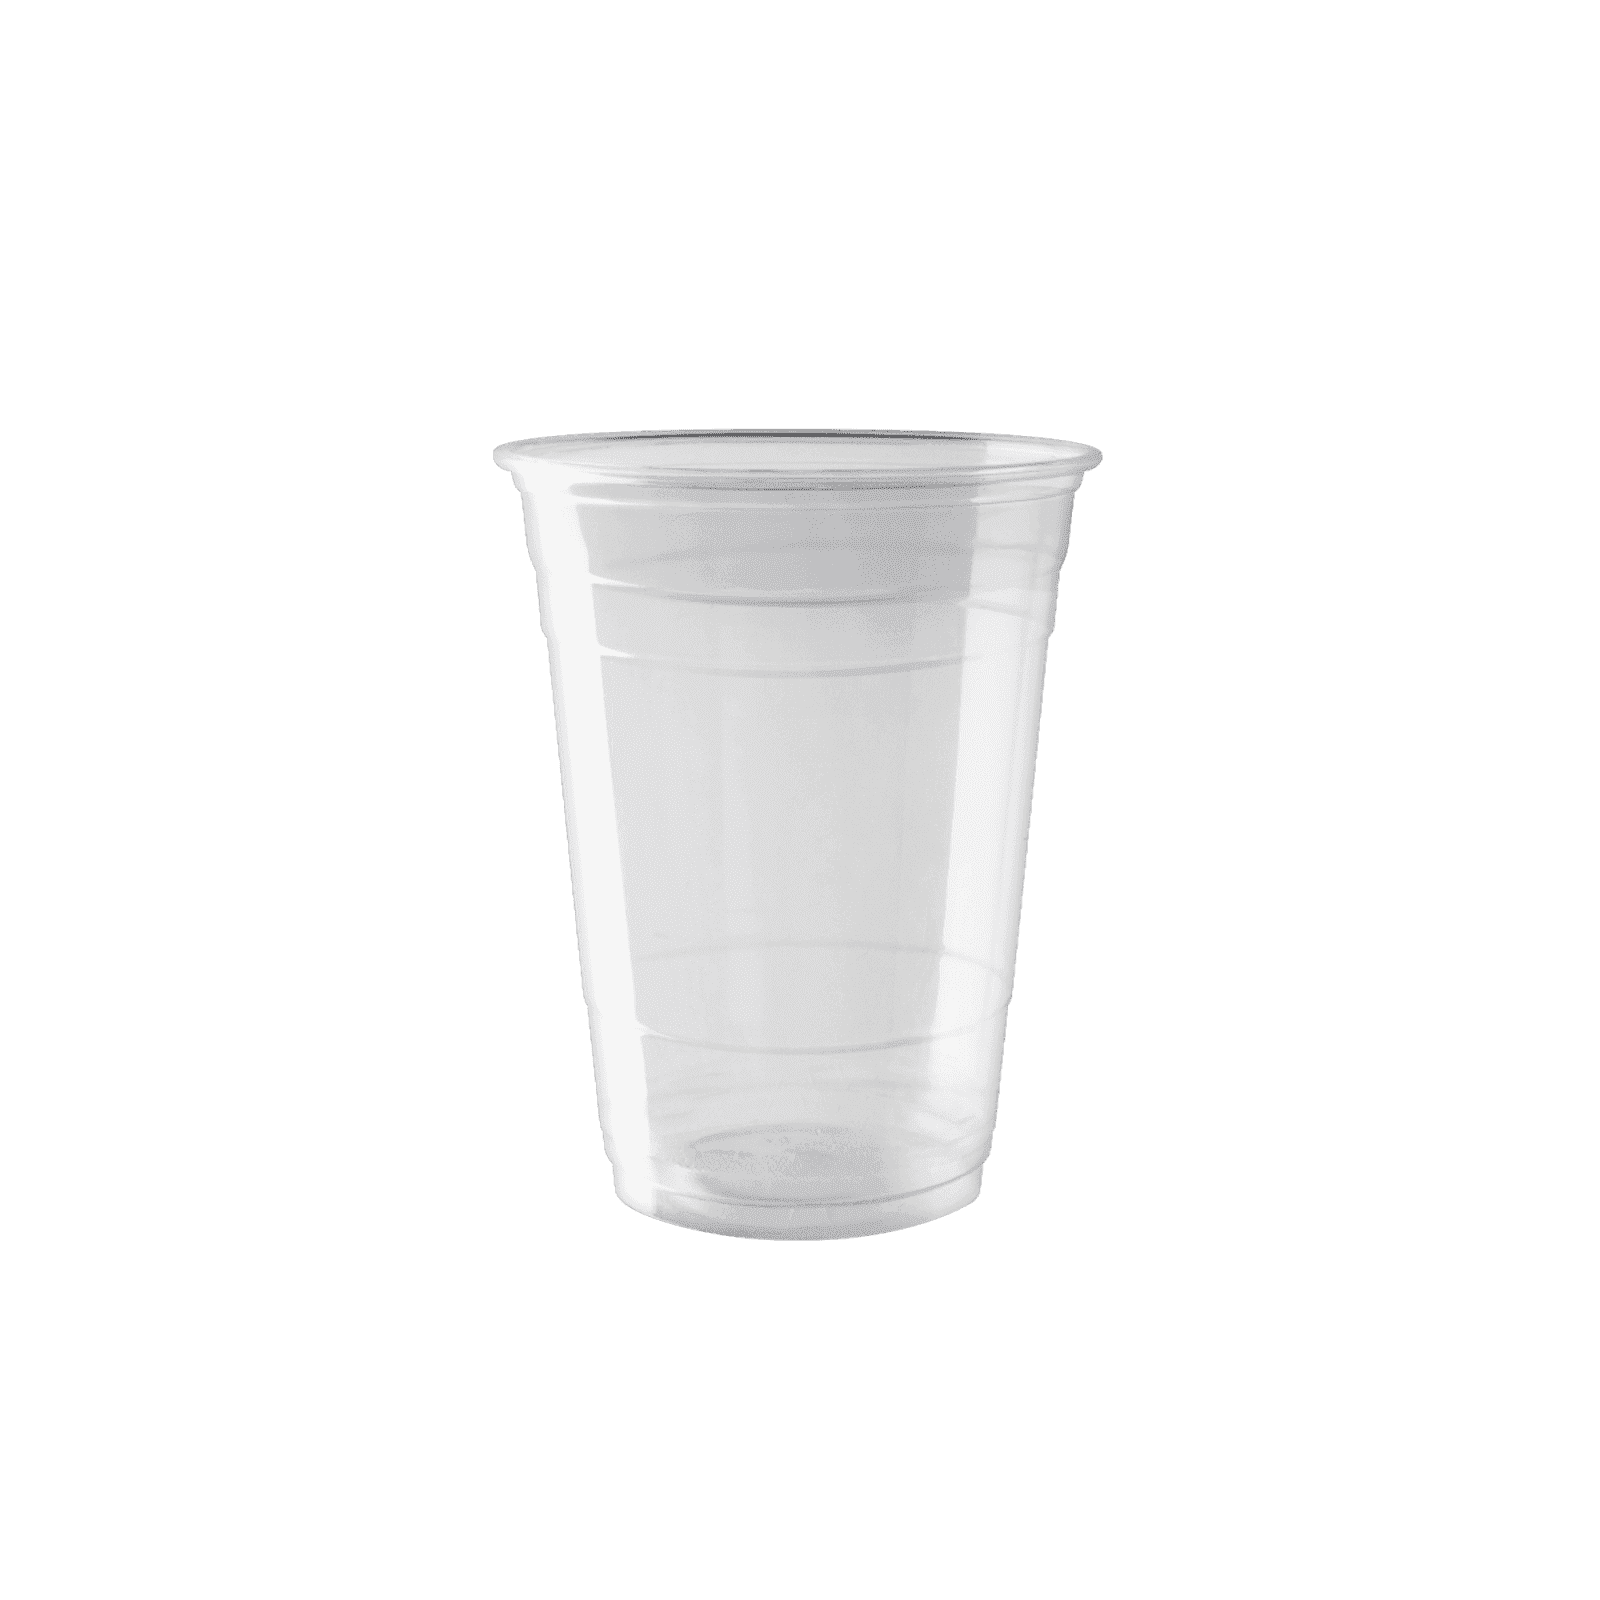 Enpak disposable cold plastic drinking cups with lids 16 oz EPK-PET-16